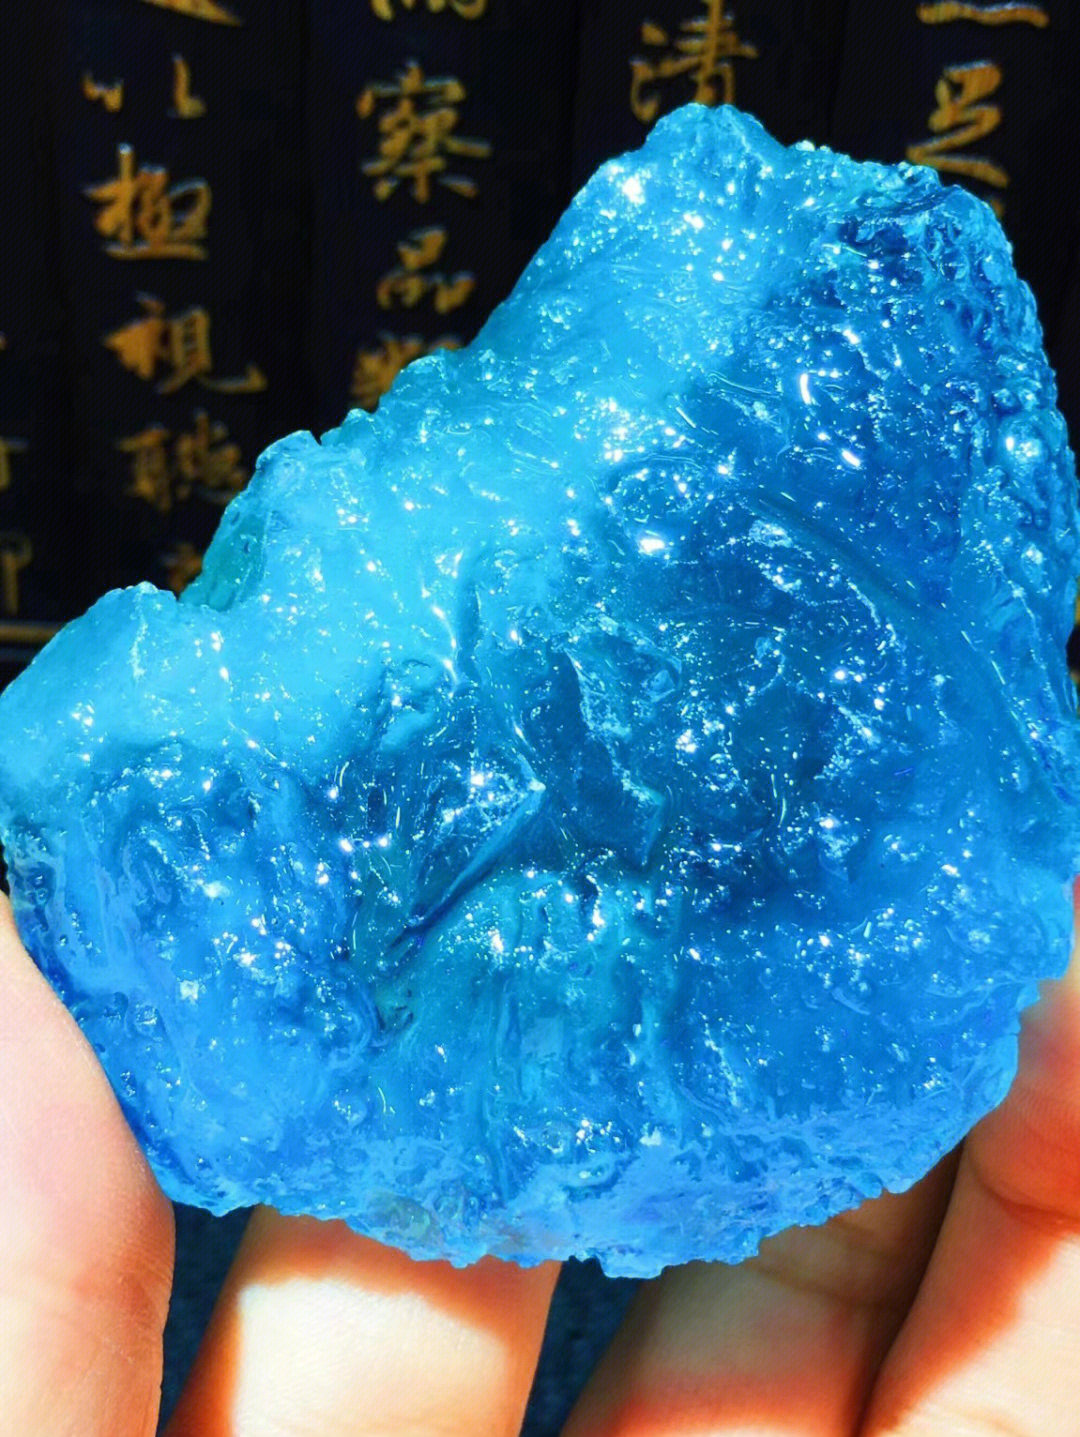 海蓝宝石伴生矿图片